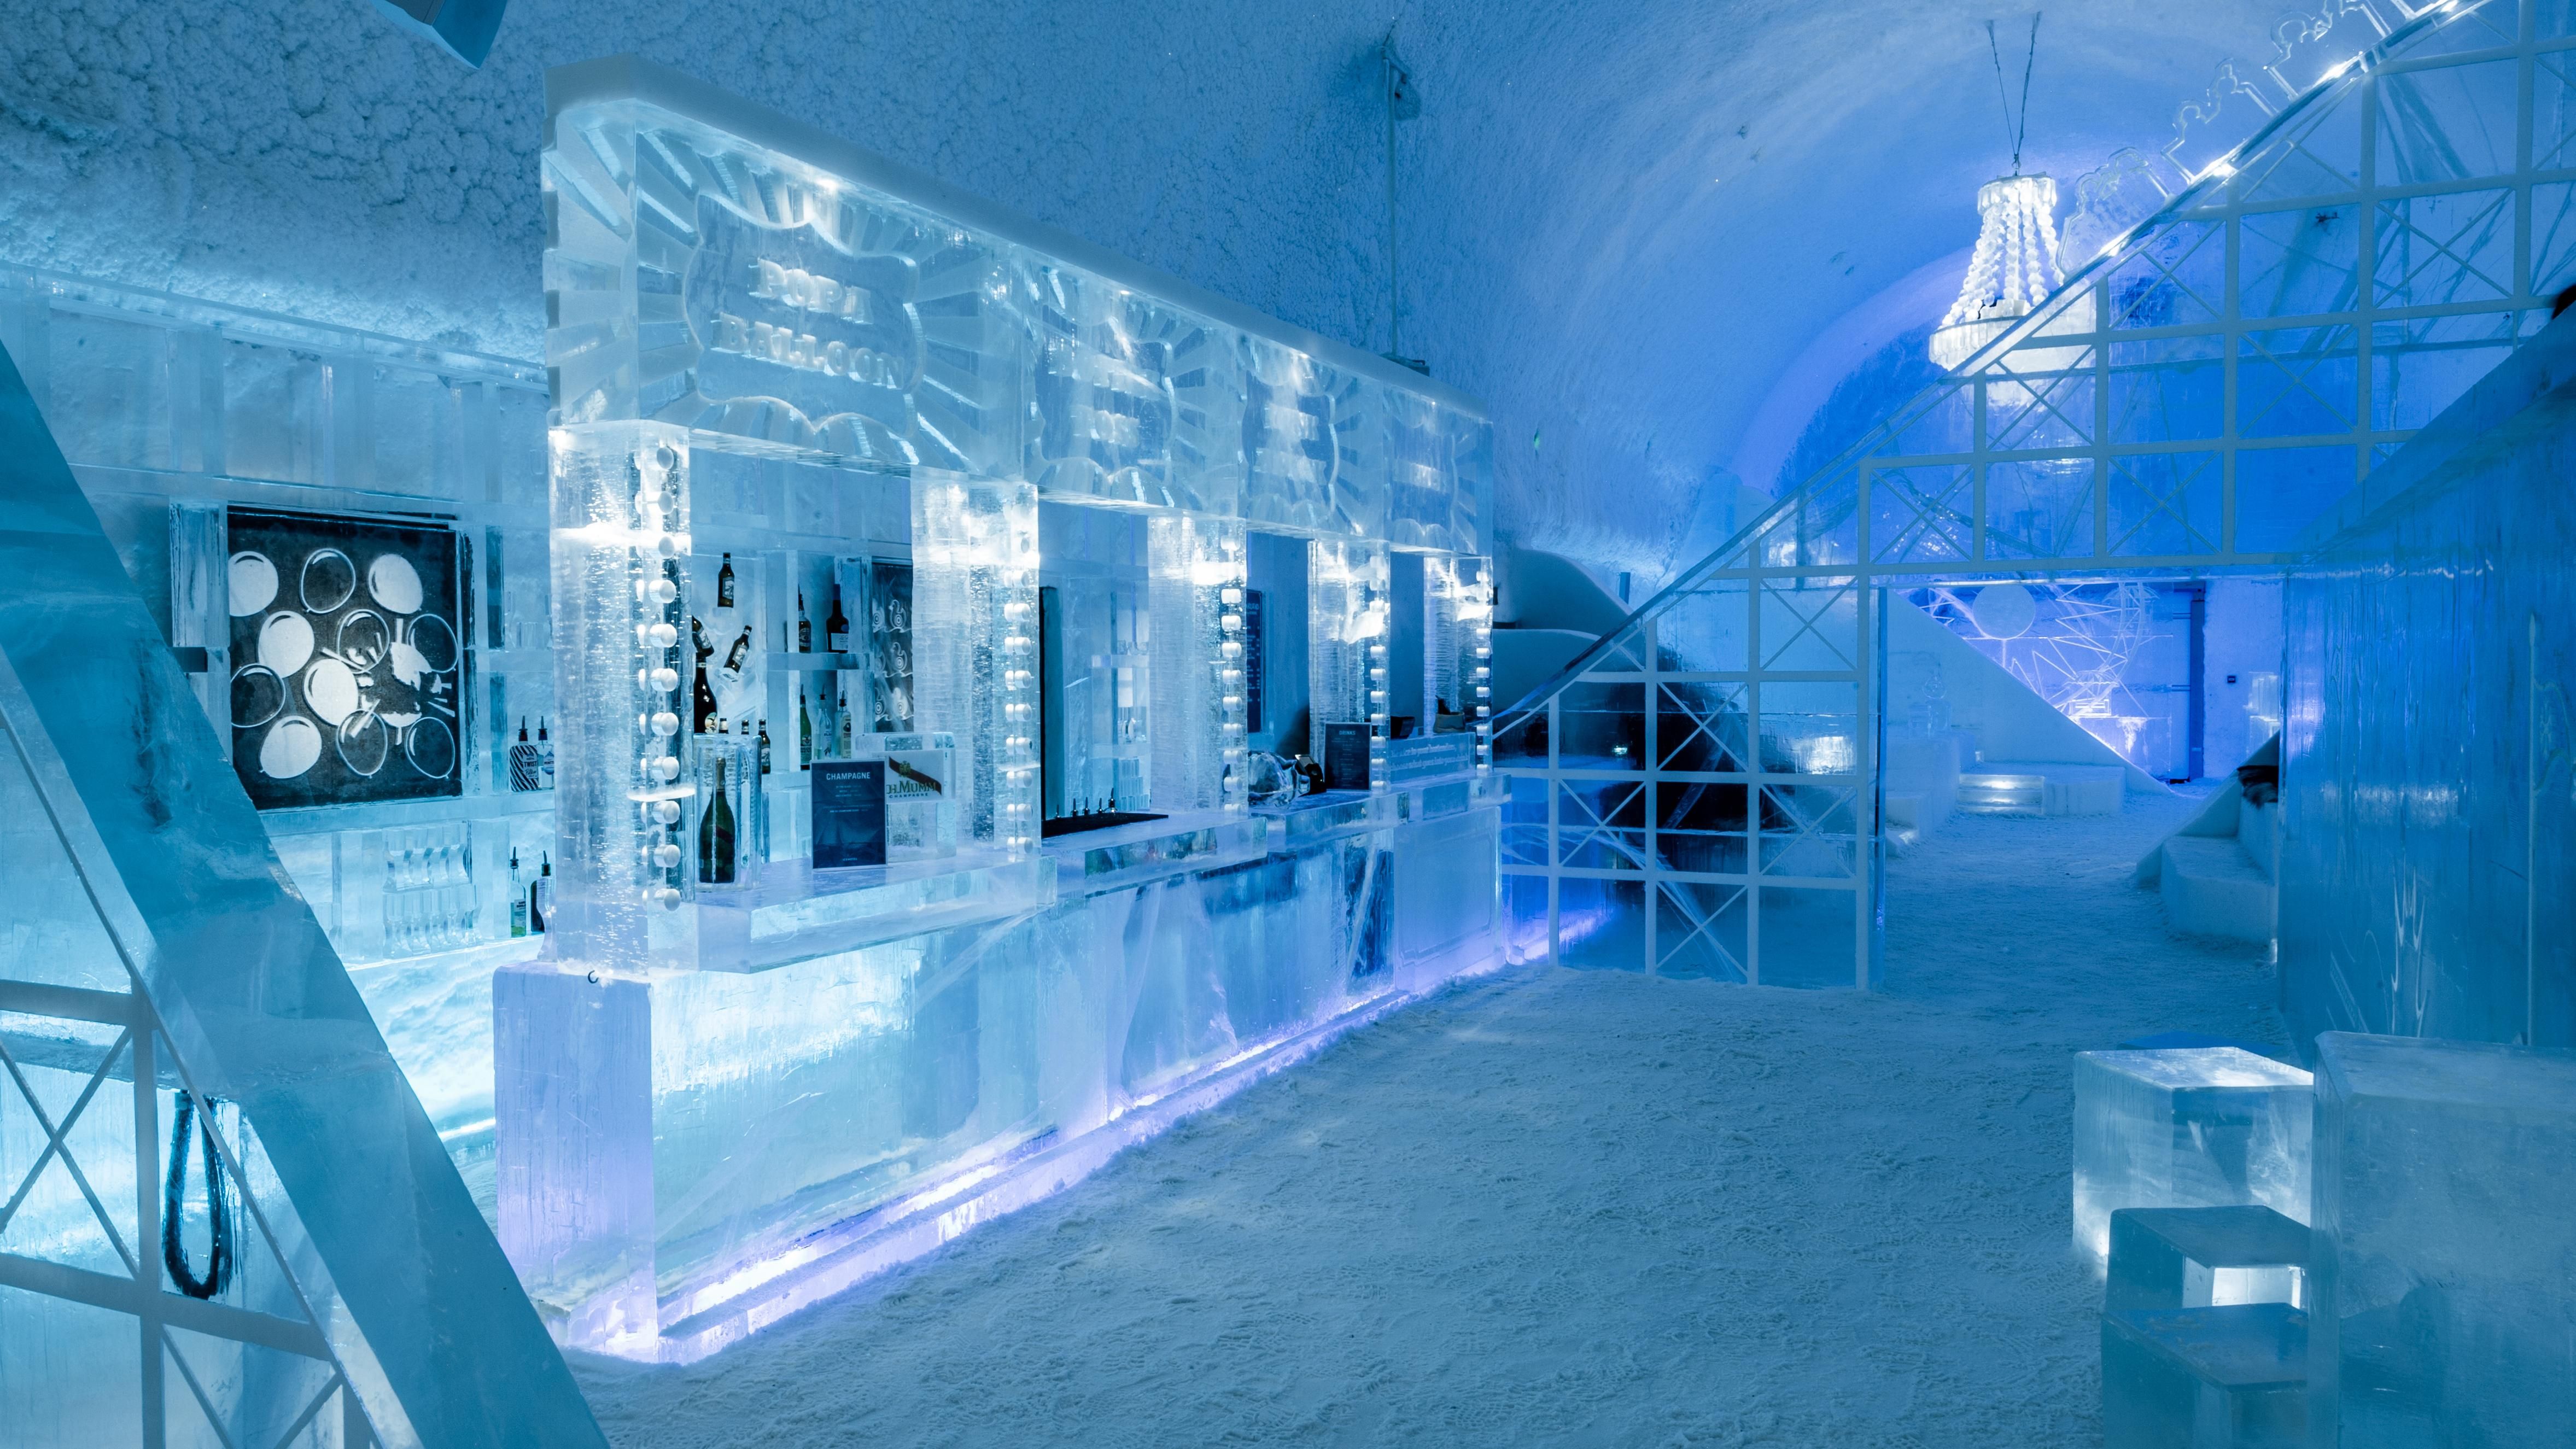 Крижаний готель запрошує на ночівлю – фото номерів із суцільного льоду